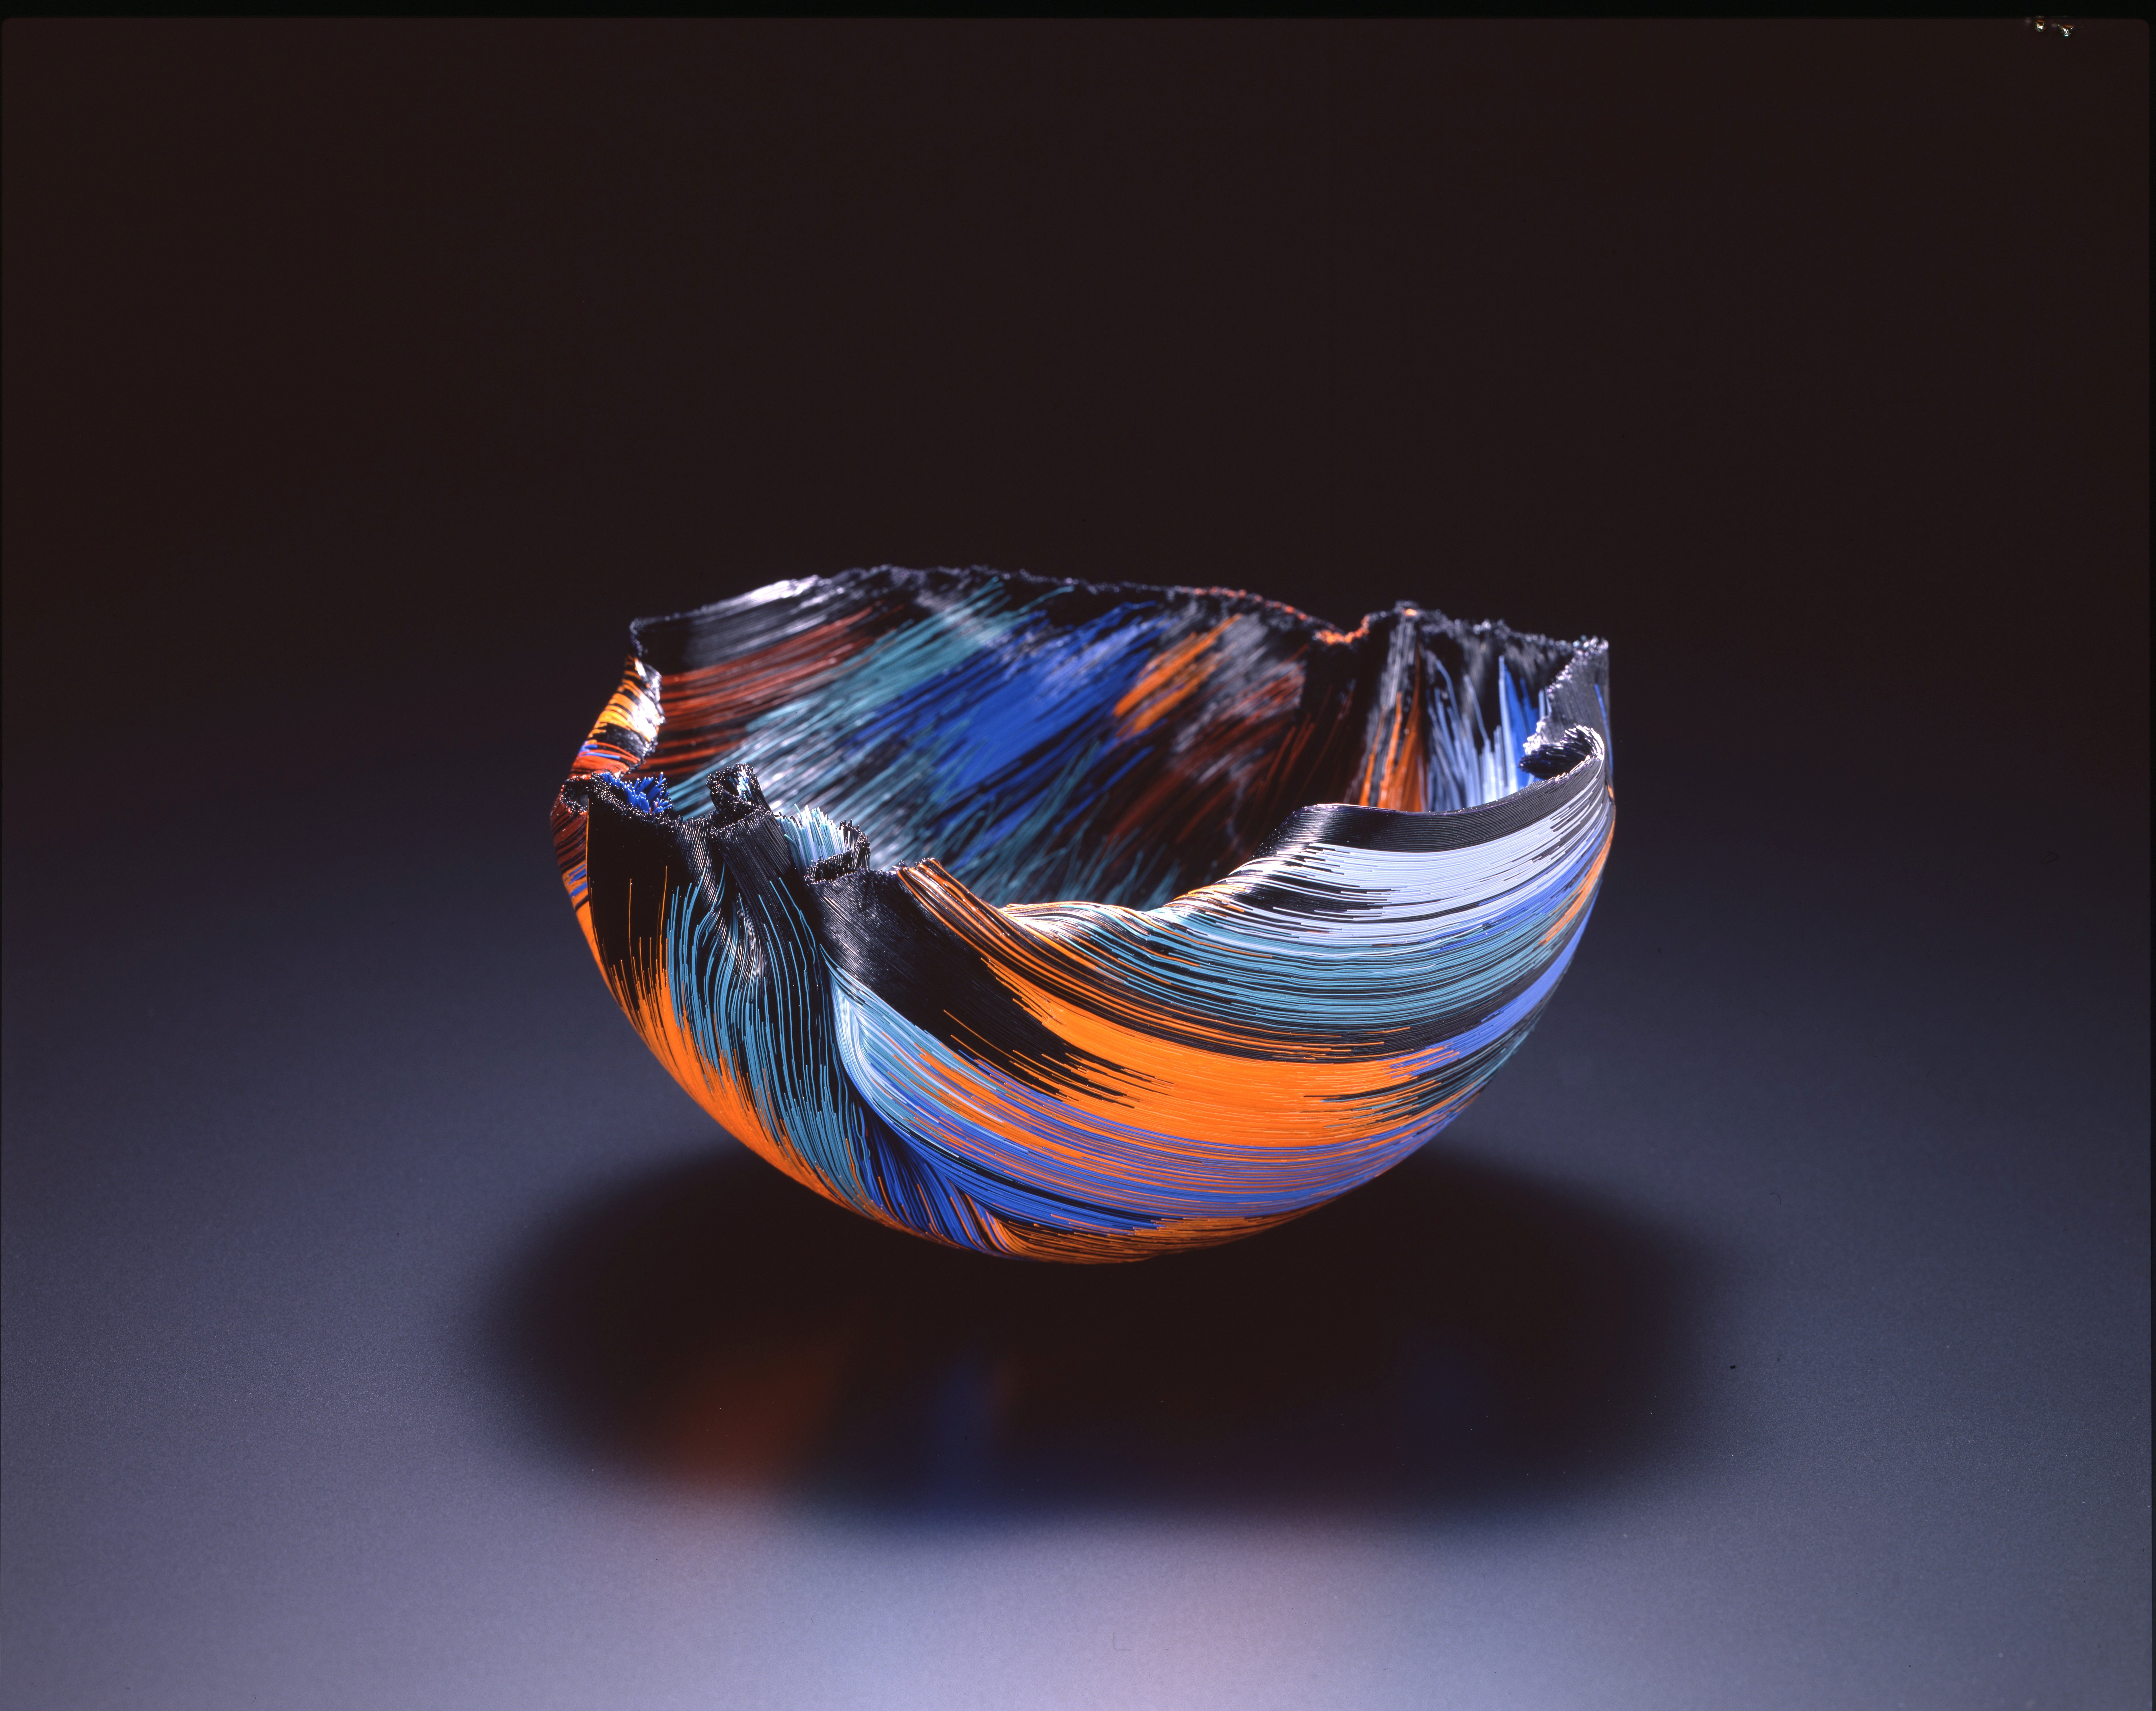 現代玻璃藝術之美<br>Toots Zynsky《火地群島的系列作品》1988年